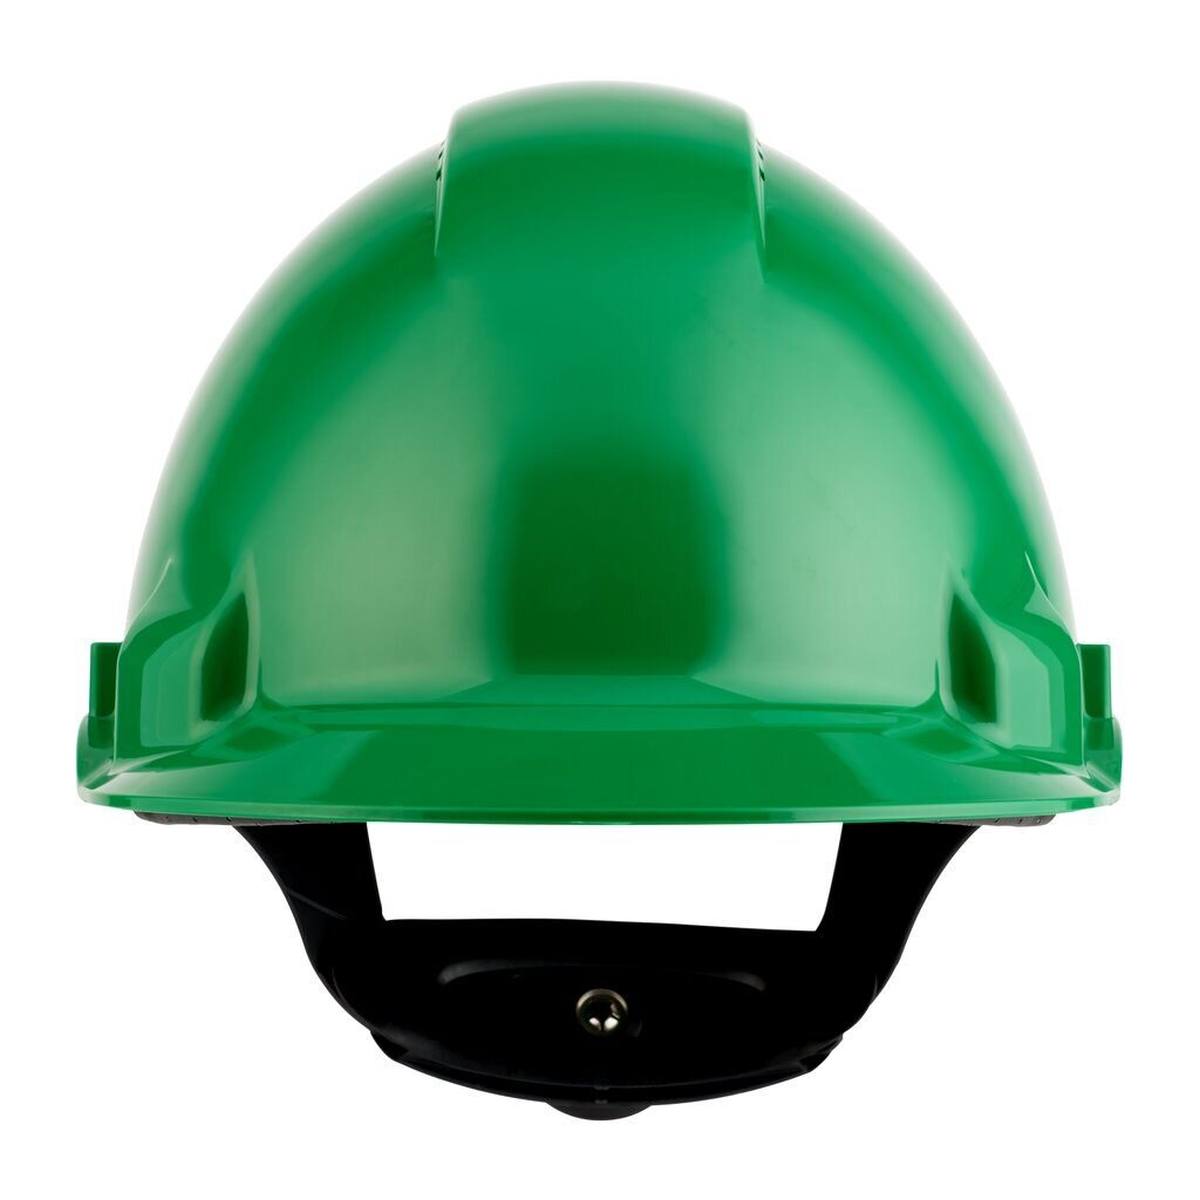 elmetto di sicurezza 3M G3000 G30NUG di colore verde, ventilato, con uvicatore, cricchetto e cinturino in plastica per saldatura